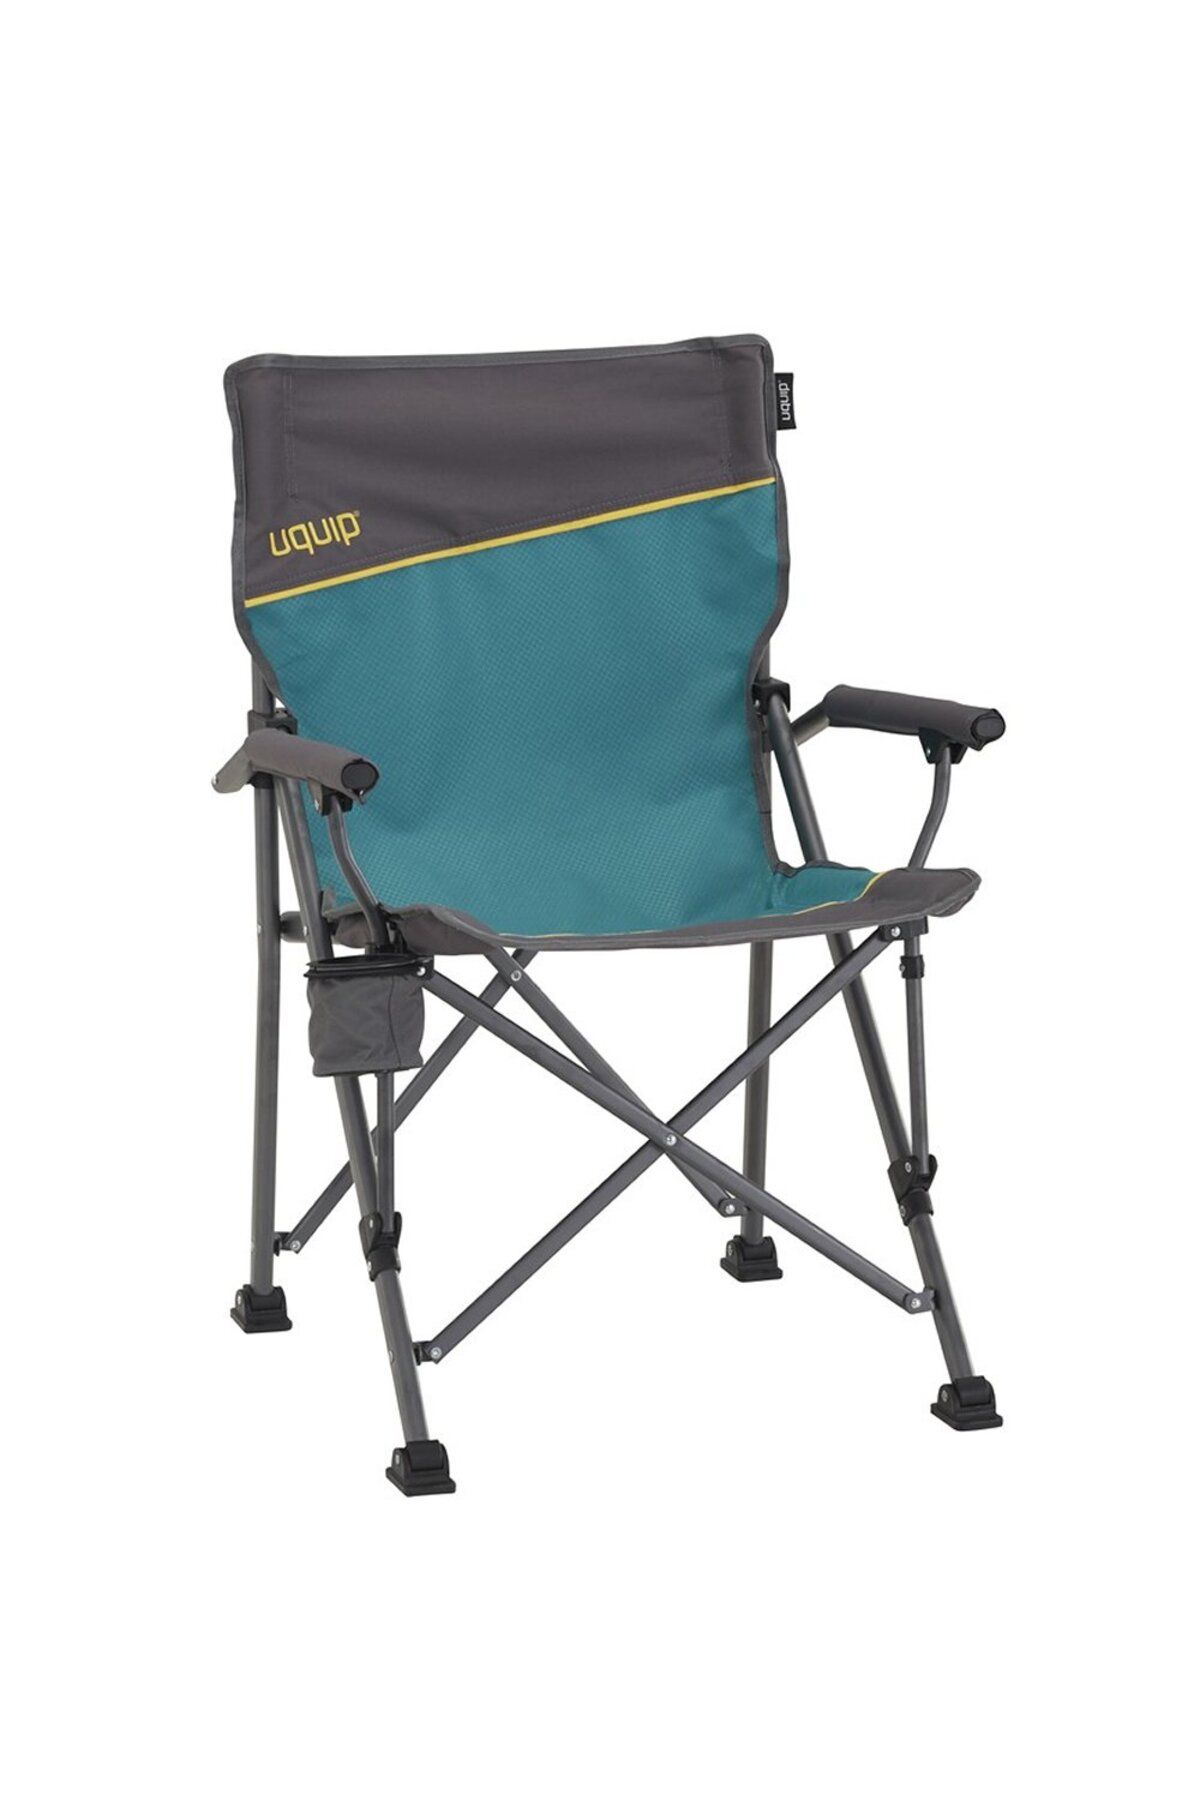 Uquip Roxy Yüksek Konforlu & Takviyeli Katlanır Kamp Sandalyesi Mavi